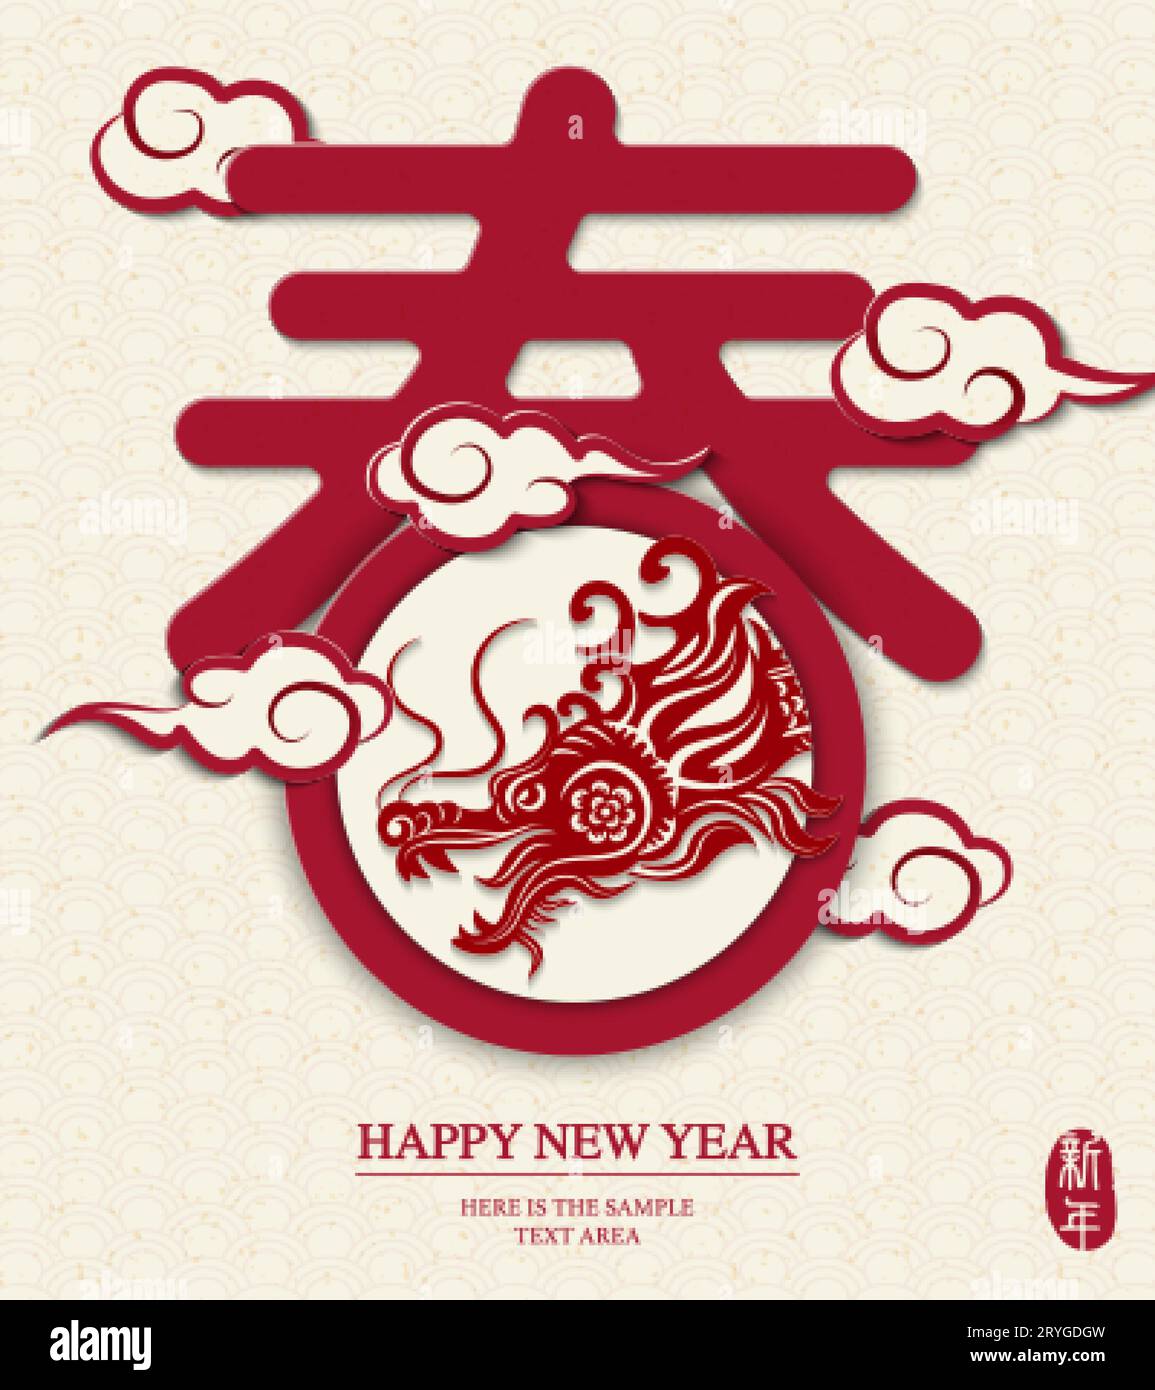 Joyeux nouvel an chinois de dragon avec l'art de conception de texte chinois Traduction chinoise : Printemps et nouvel an Illustration de Vecteur